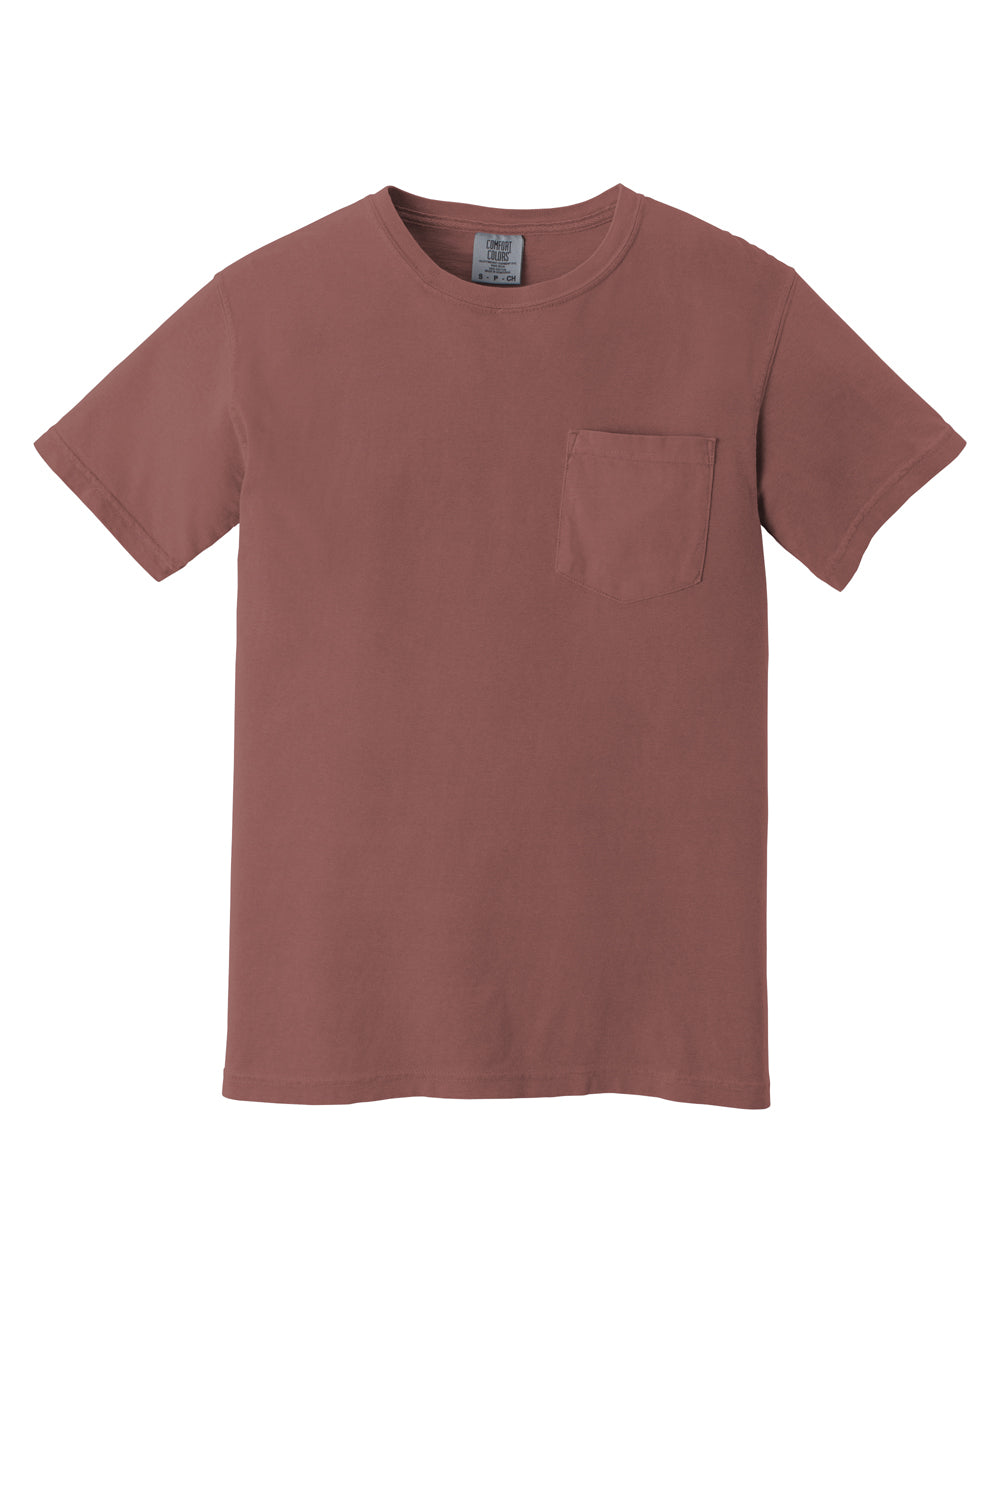 Comfort Colors Mens Short Sleeve Crewneck T-Shirt w/ Pocket Cumin Flat Front